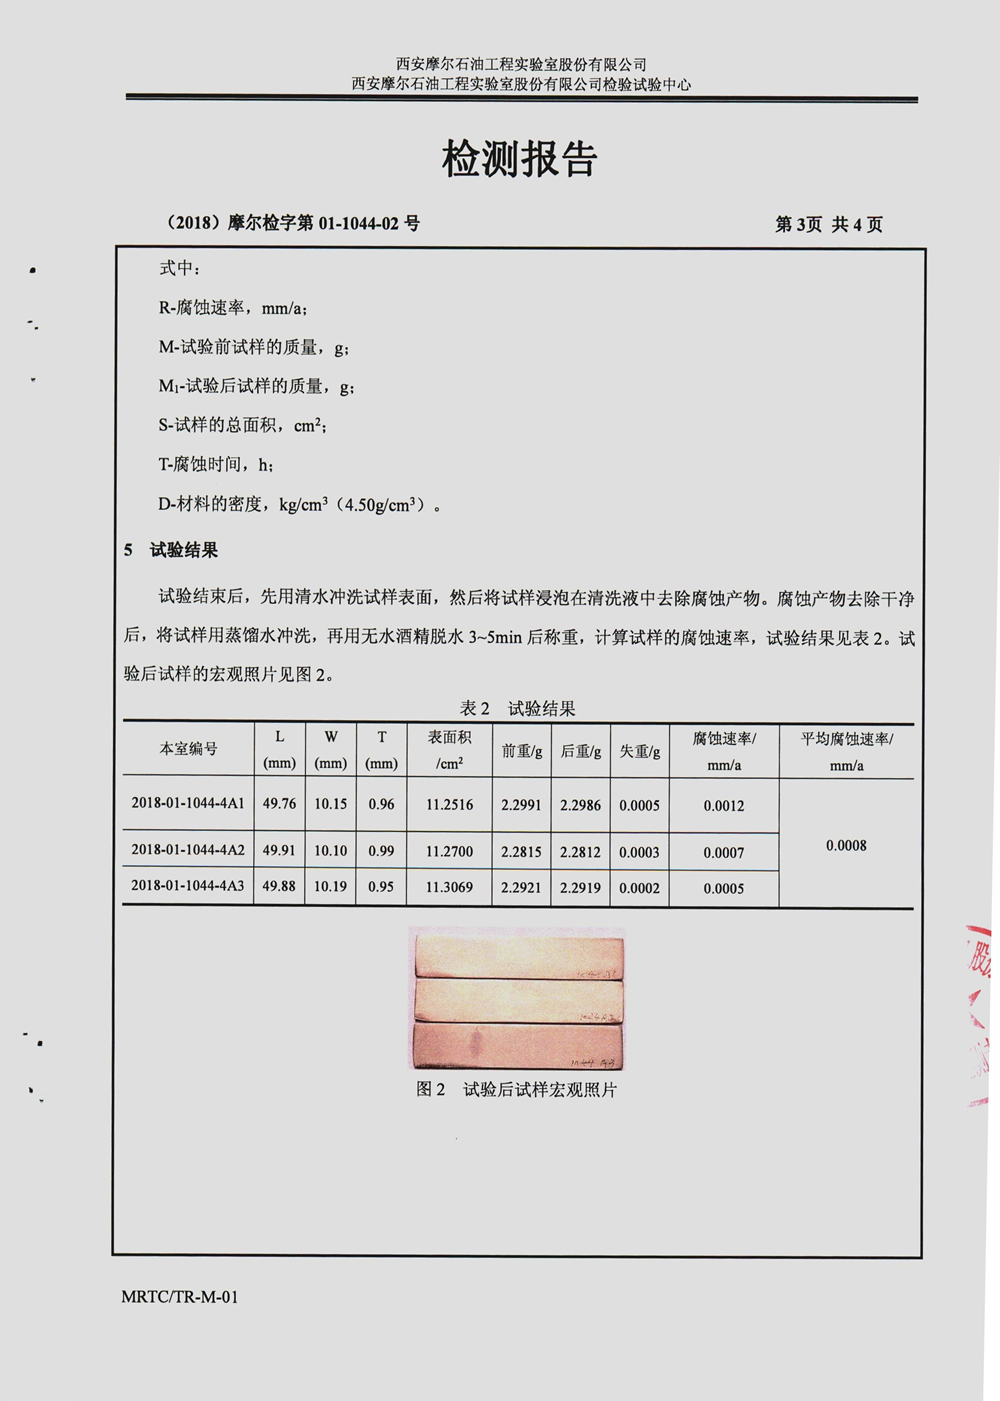 摩尔实验室报告-烟囱收集液抗腐 -中文 (4)